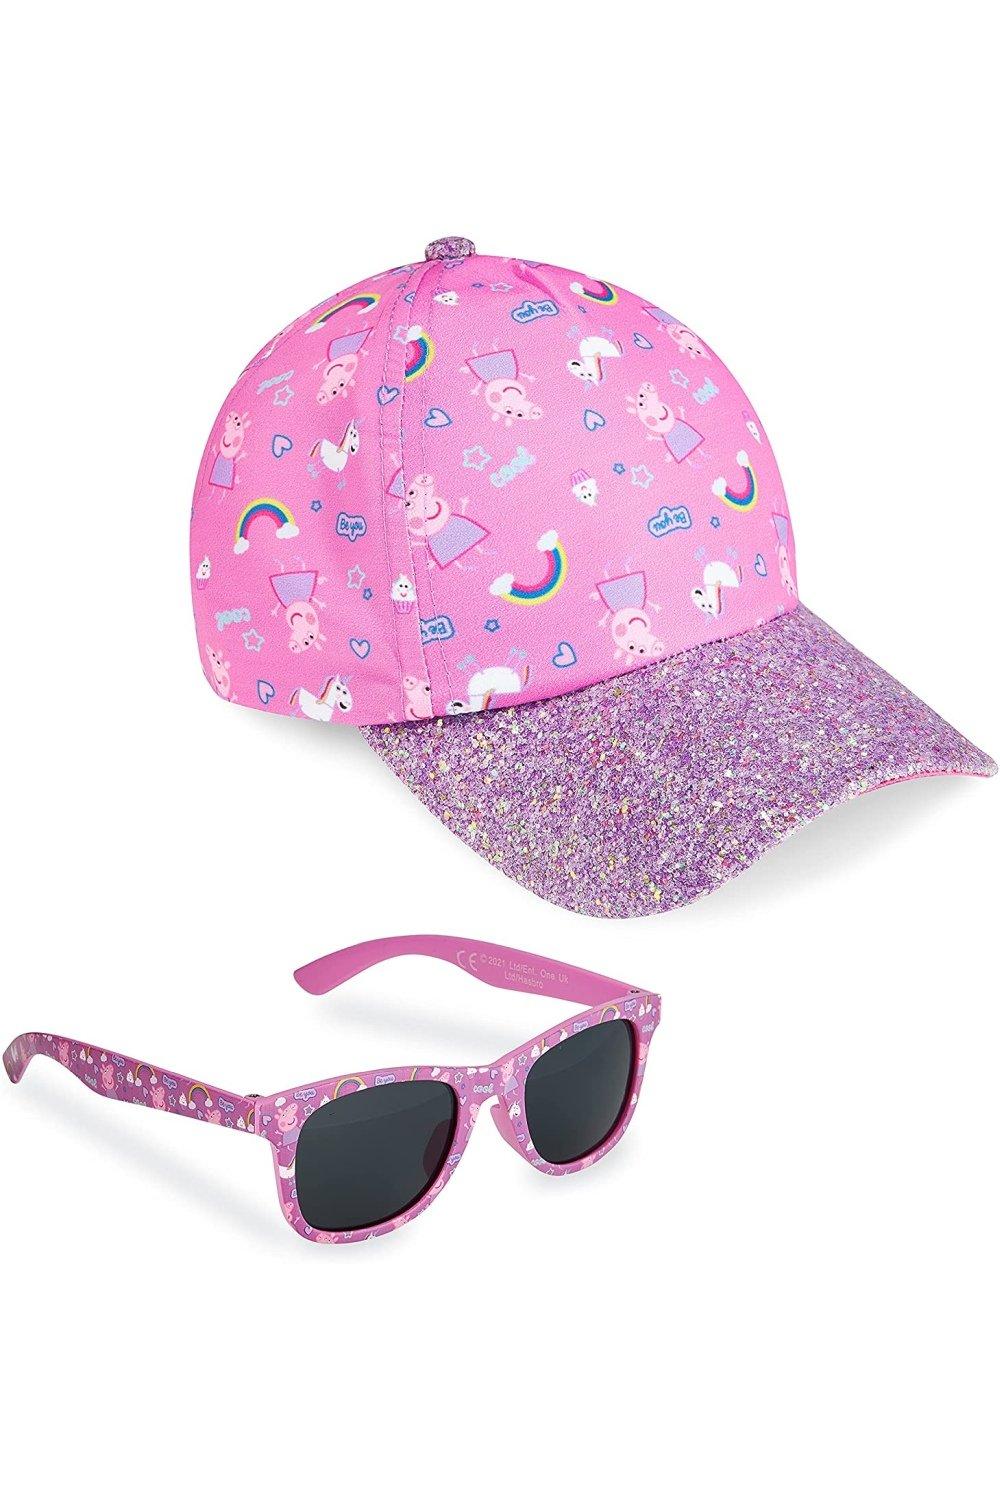 Кепка и солнцезащитные очки Peppa Pig, розовый сумки для детей свинка пеппа peppa pig рюкзачок плюшевый детский